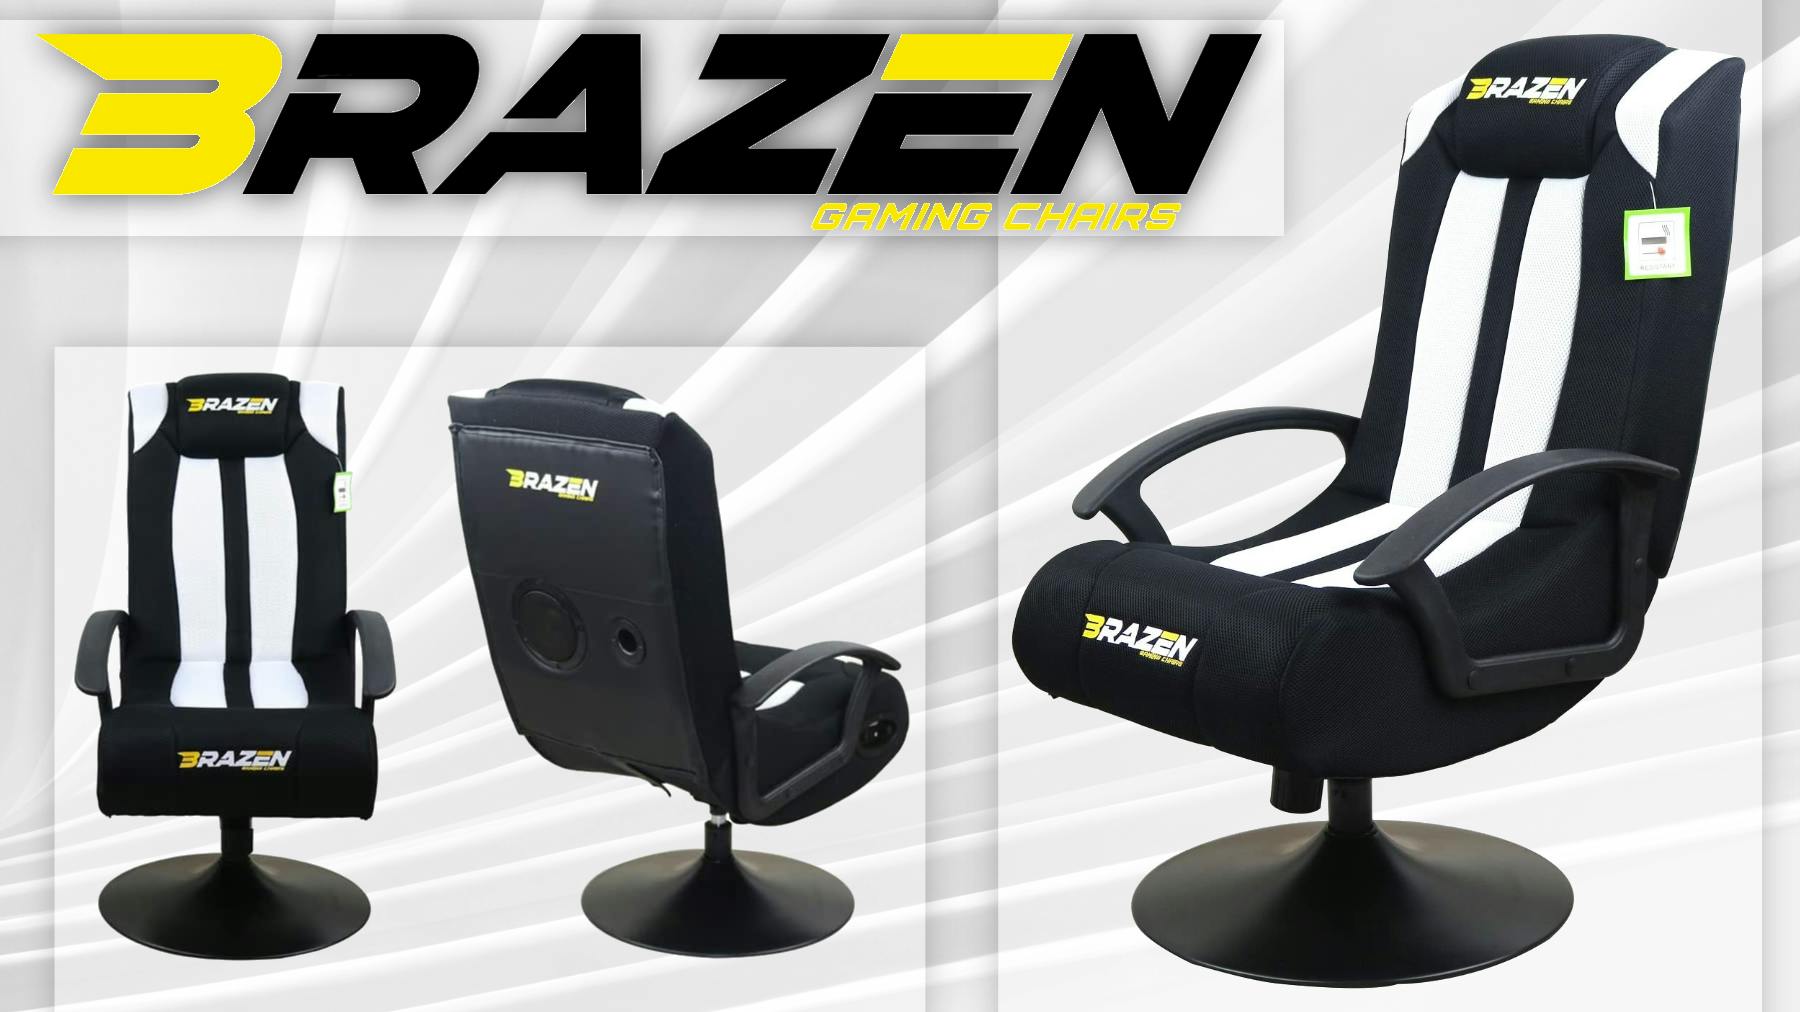 White/Black BraZen Stag 2.1 Bluetooth Surround Sound Gaming Chair 